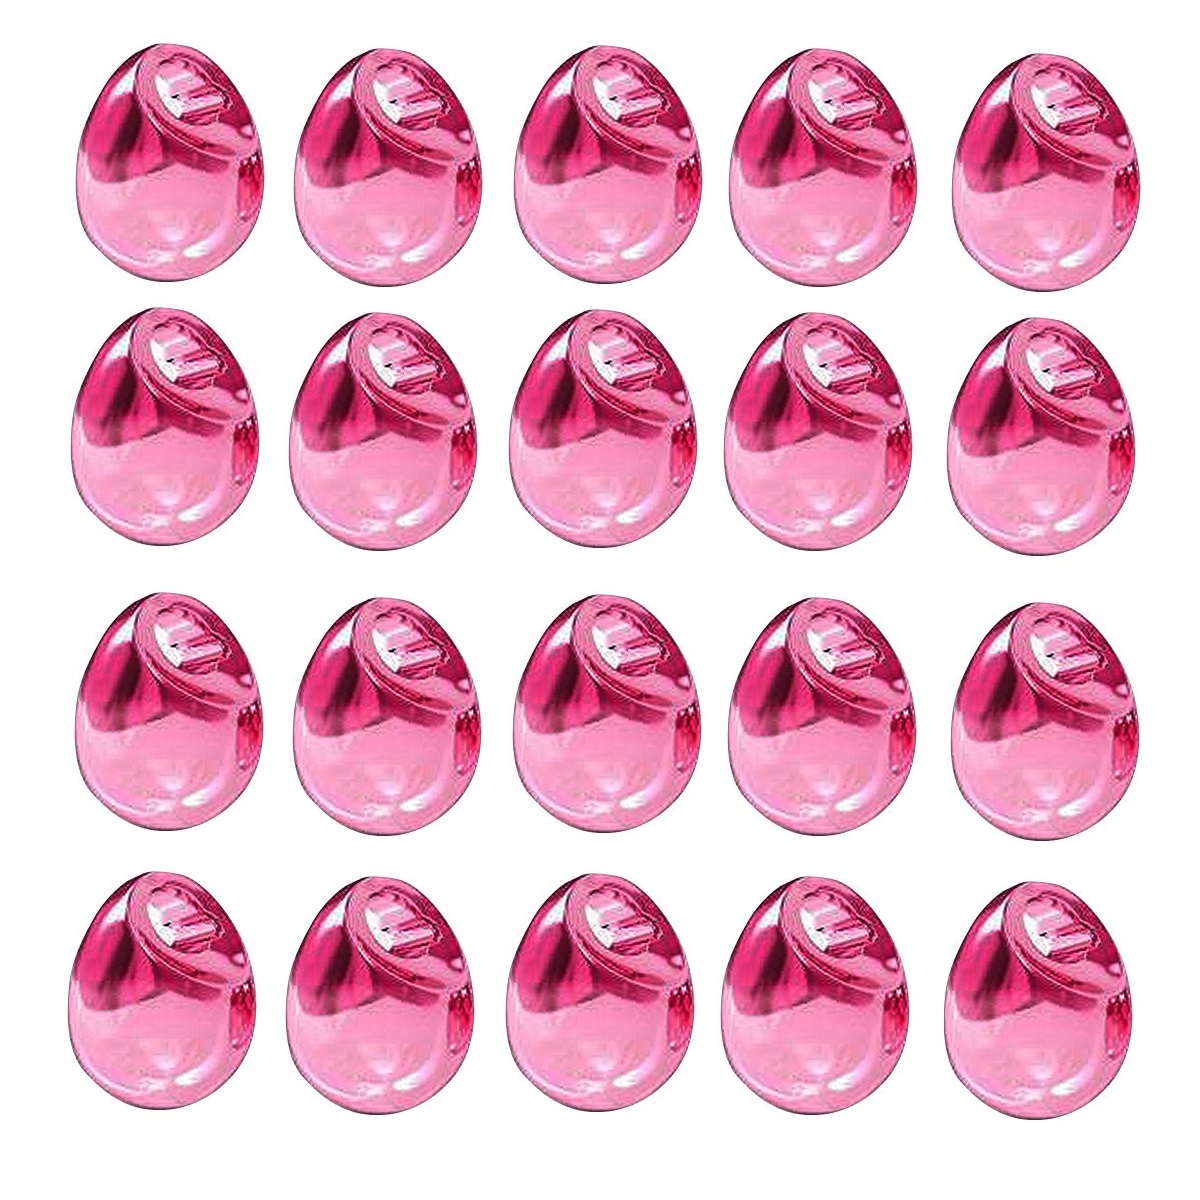 Tungsten Off Center Beads (metallic light pink)